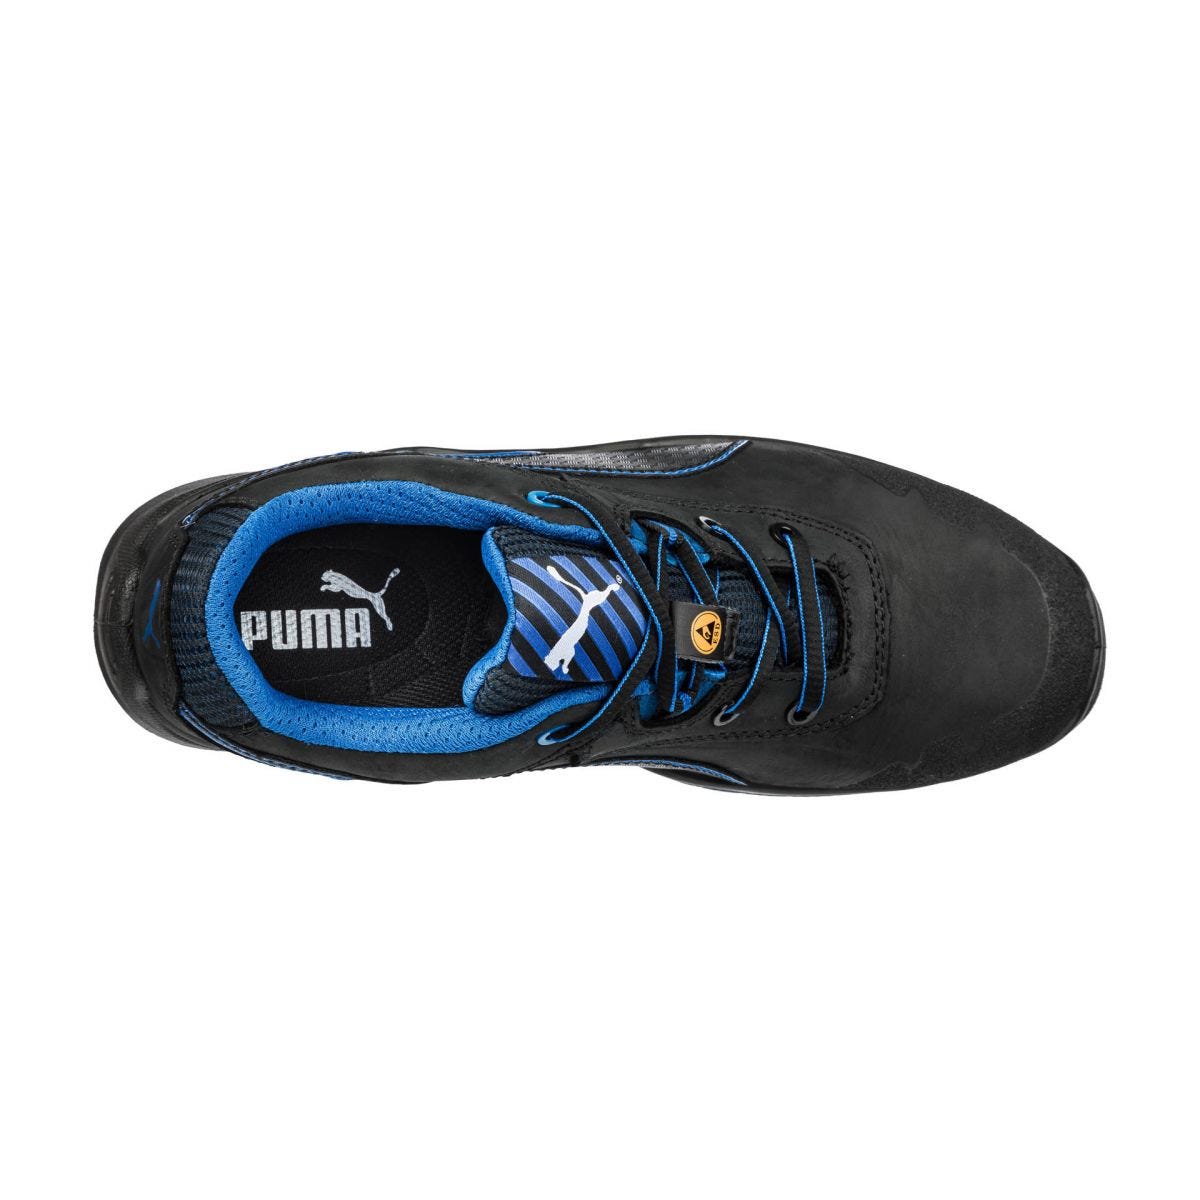 Chaussures de sécurité Argon RX low S3 ESD SRC bleu - Puma - Taille 43 2